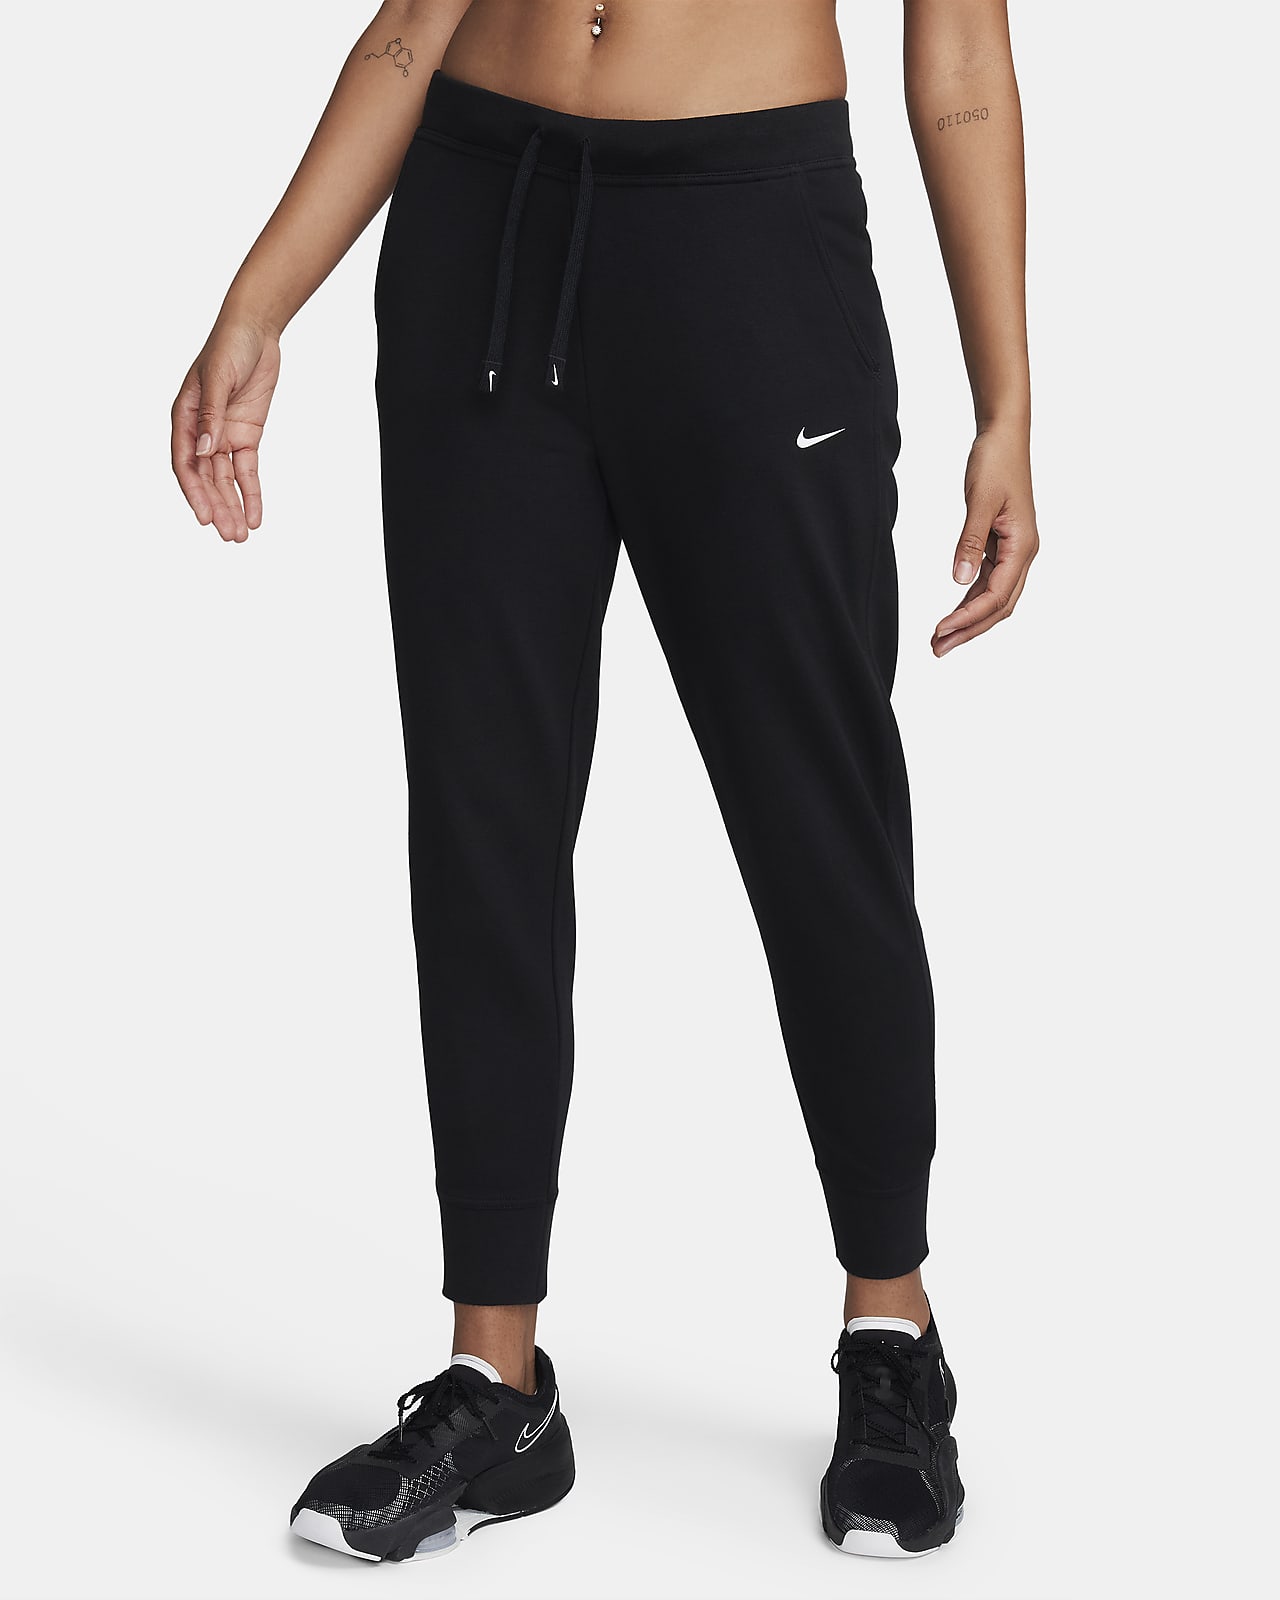 Damskie spodnie treningowe Nike Dri-FIT Get Fit